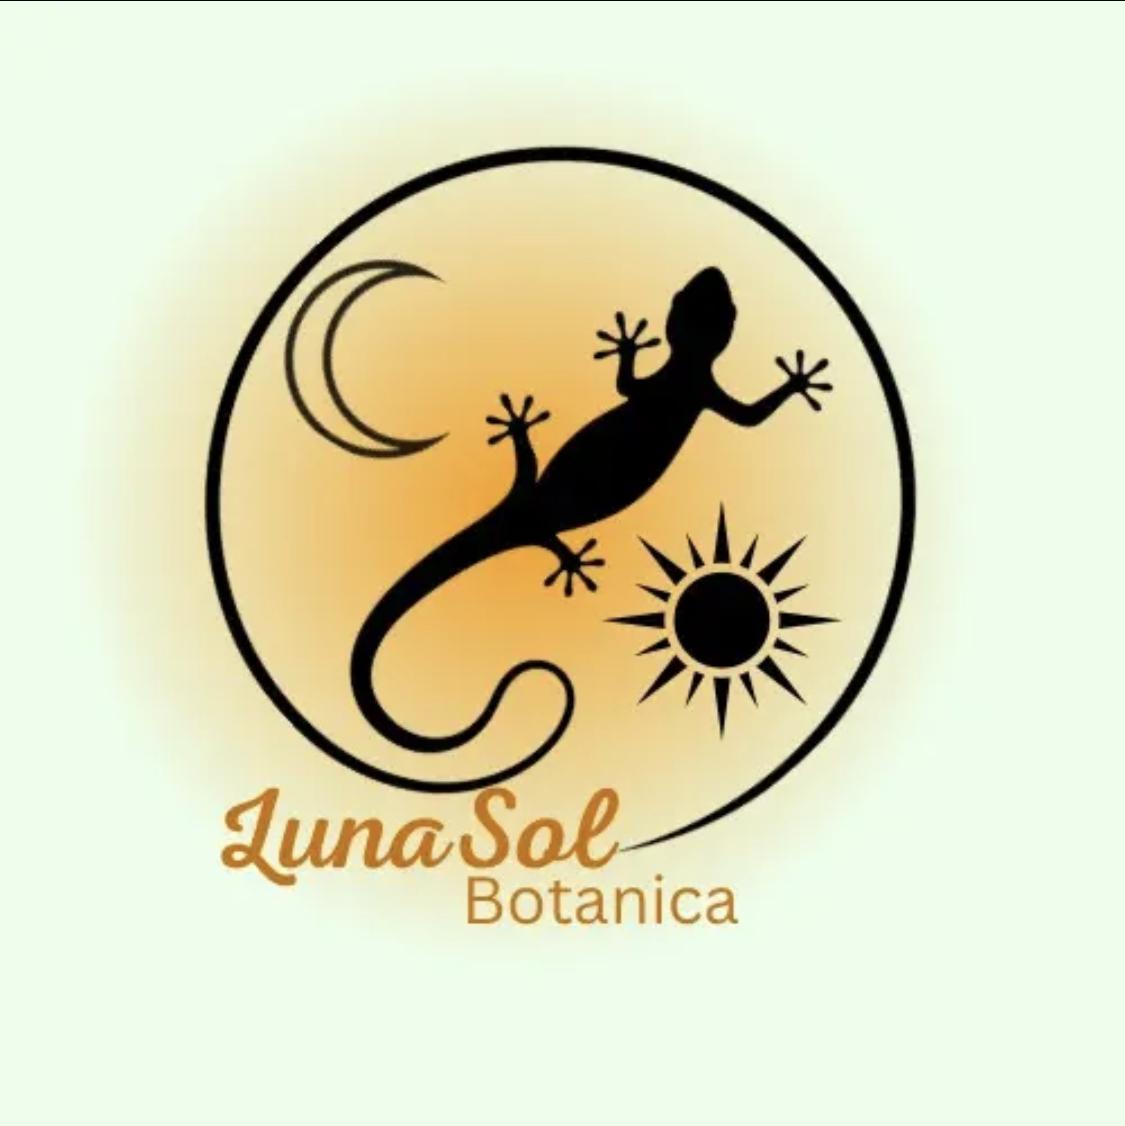 LunaSolBotanica's images